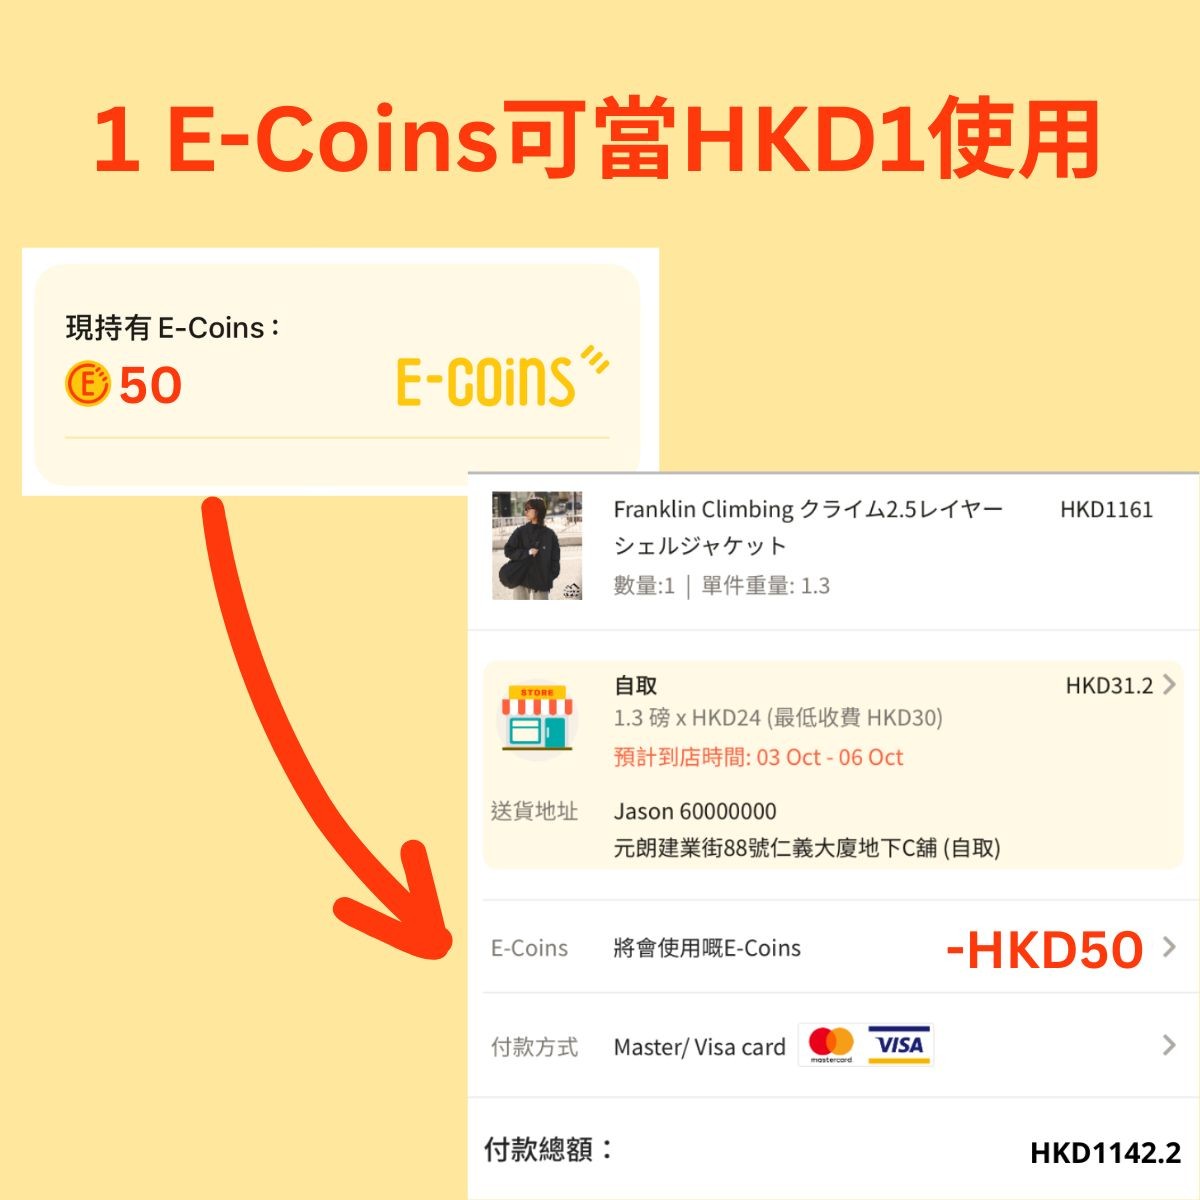 E-Coins使用方法及條款